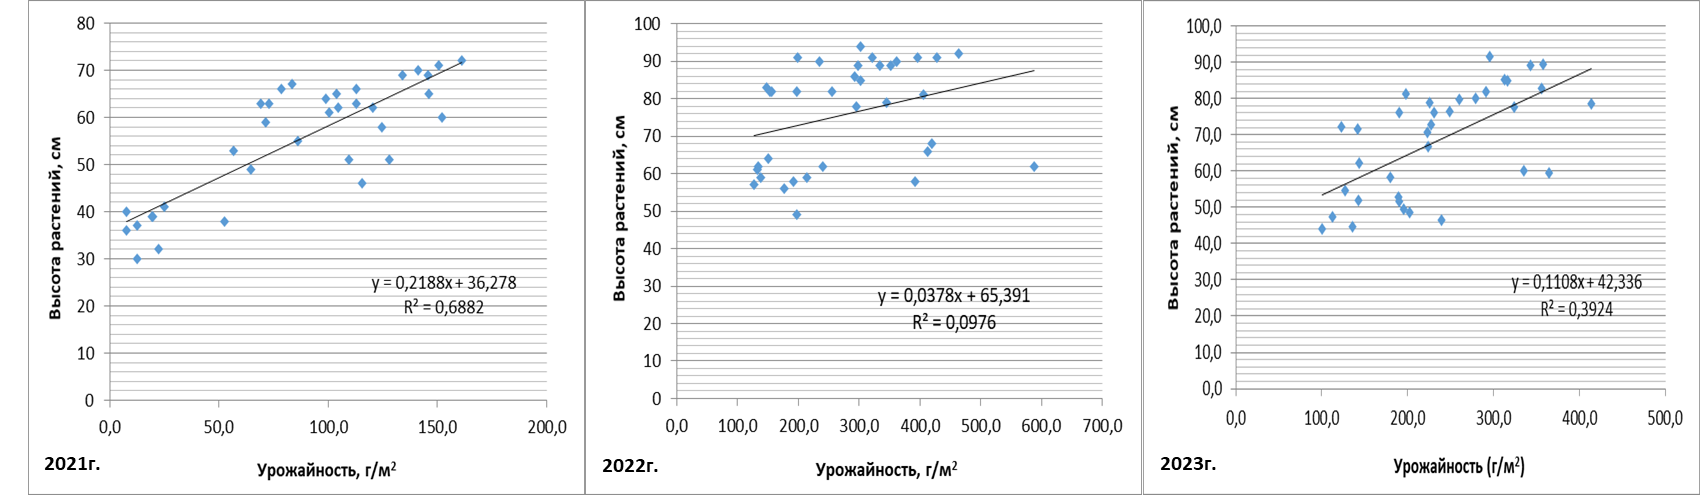 Корреляция урожайности с высотой растений яровой мягкой пшеницы в 2021-2023 гг